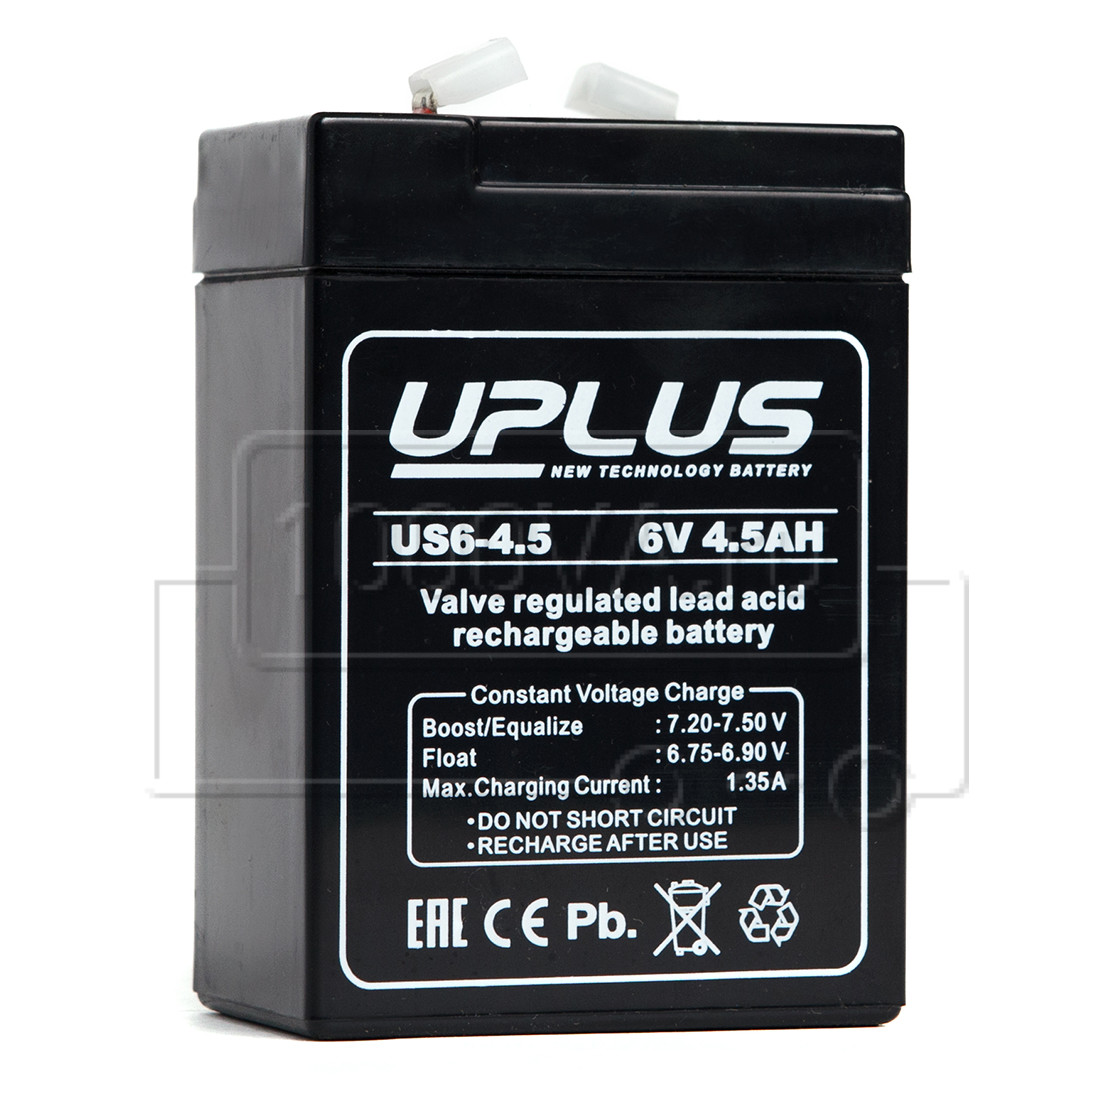 UPLUS US6-4.5